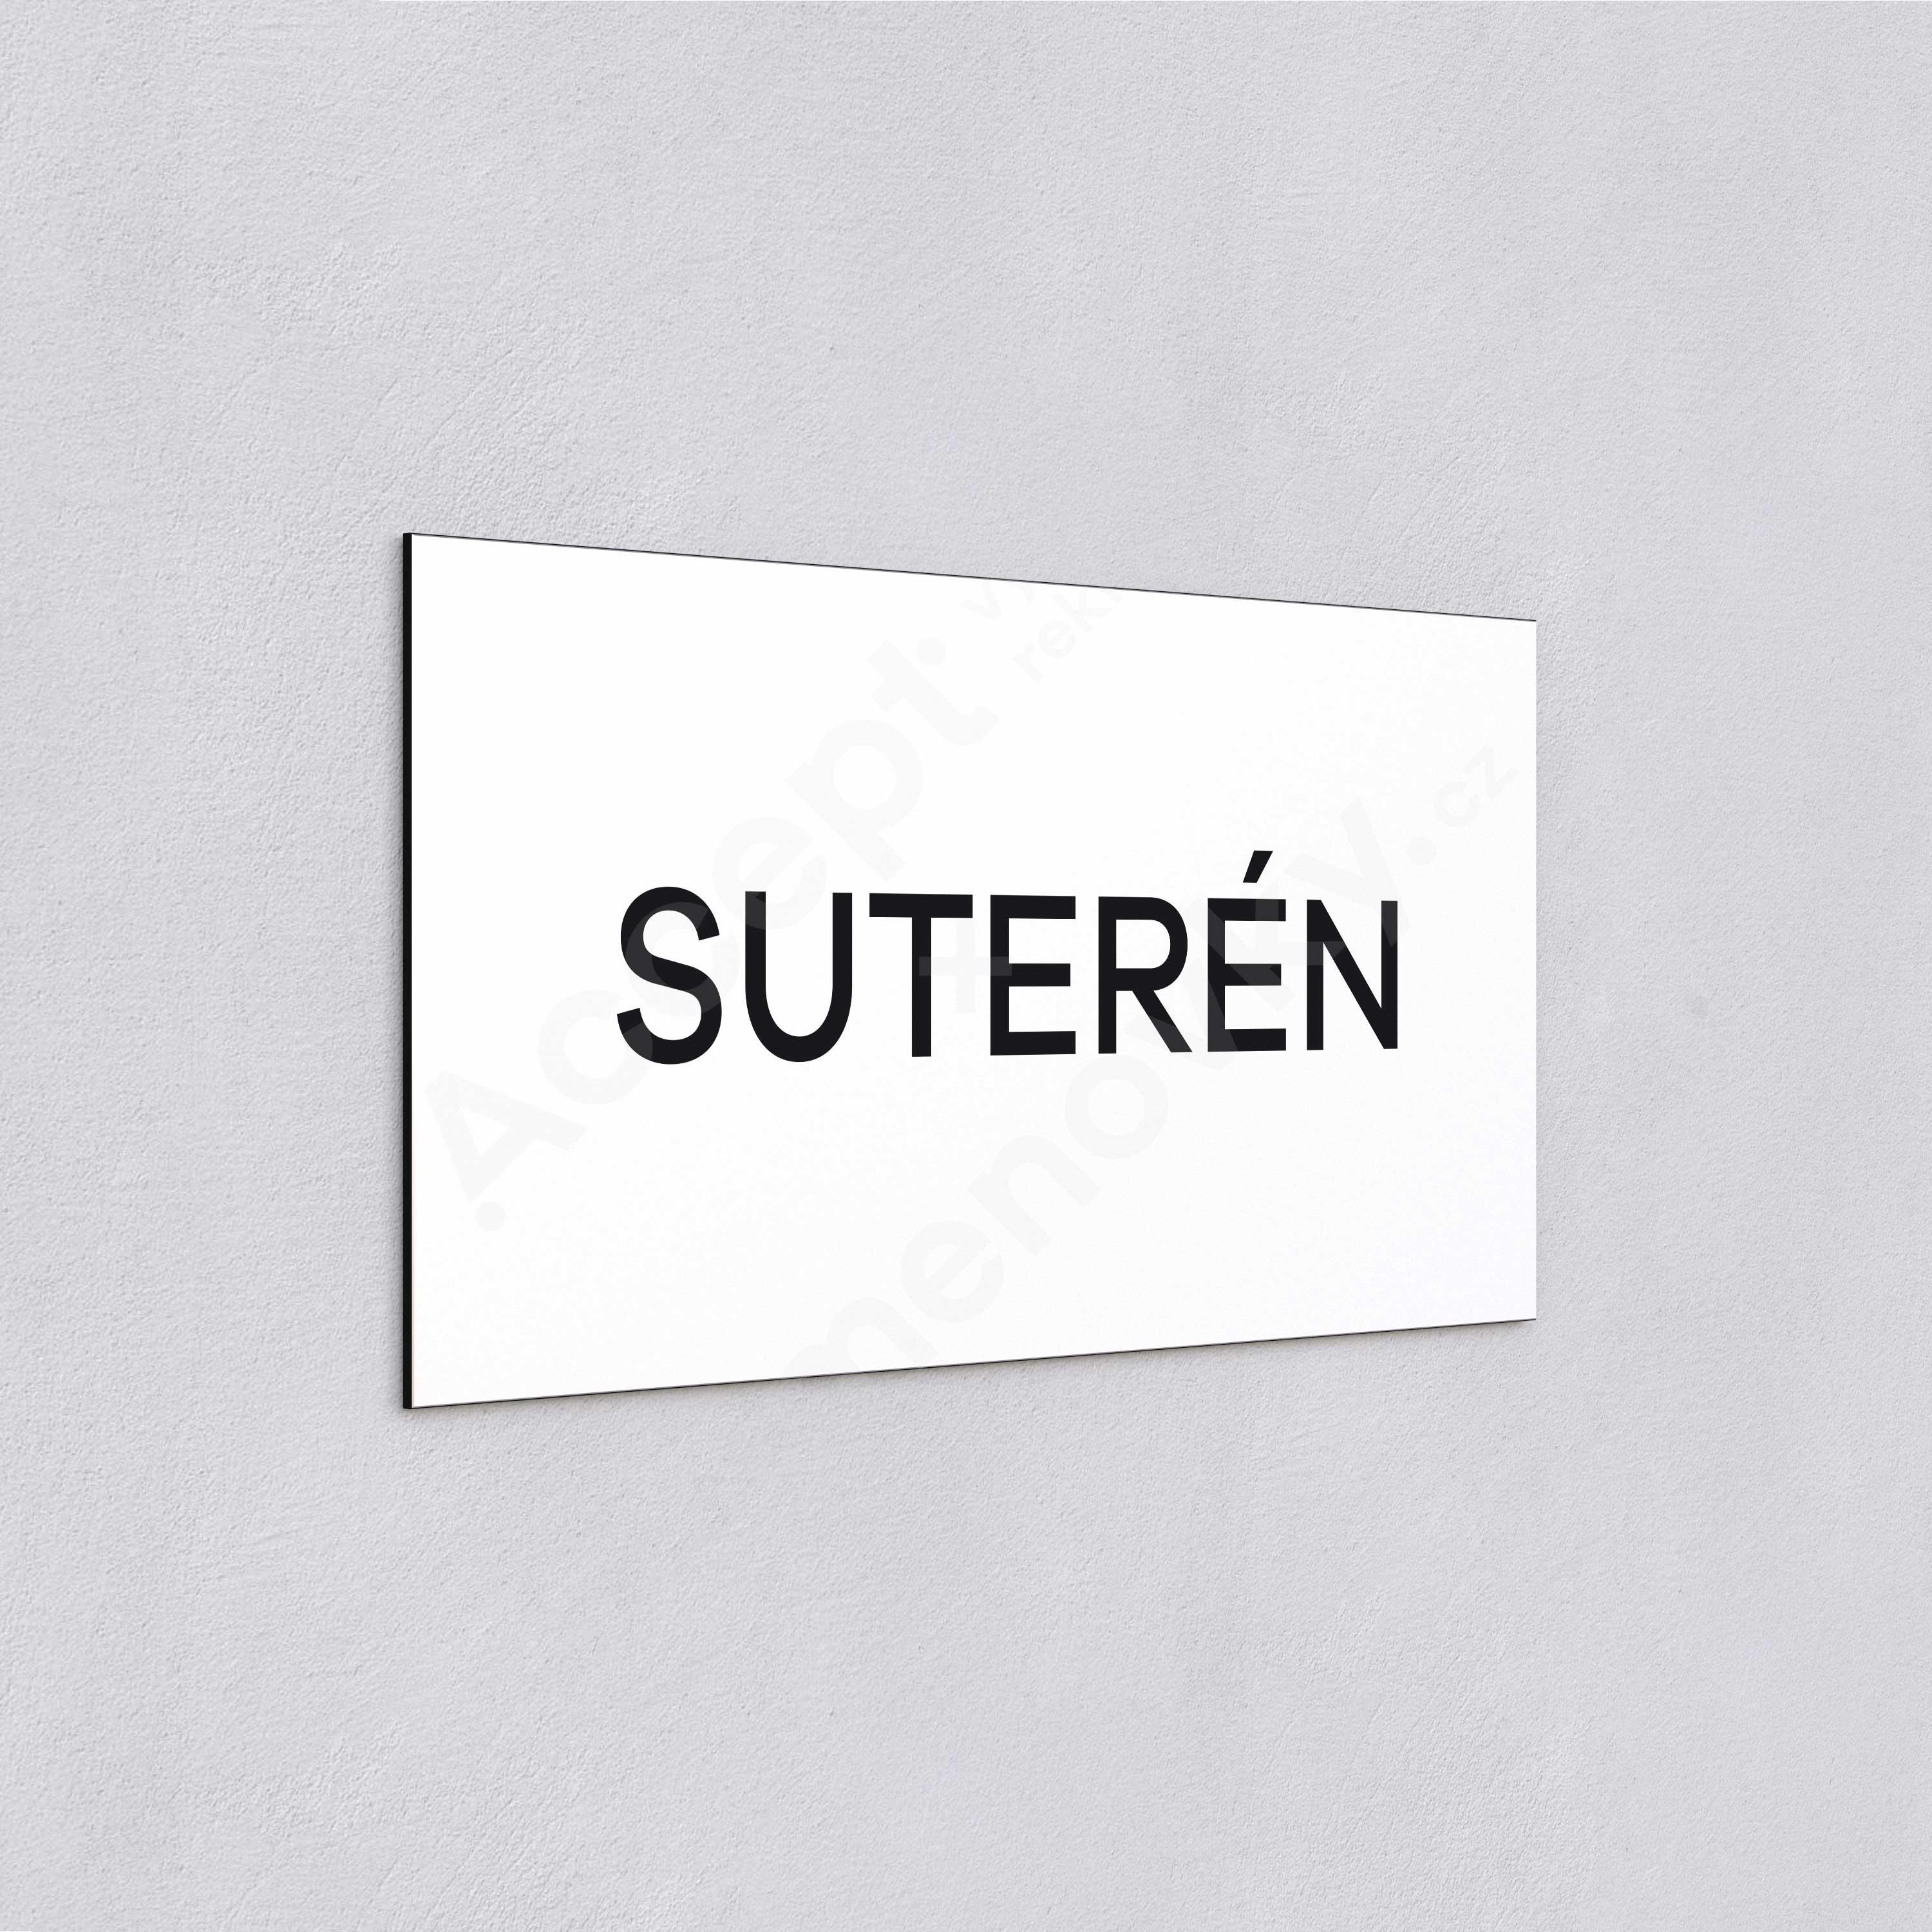 Označení podlaží "SUTERÉN" - bílá tabulka - černý popis